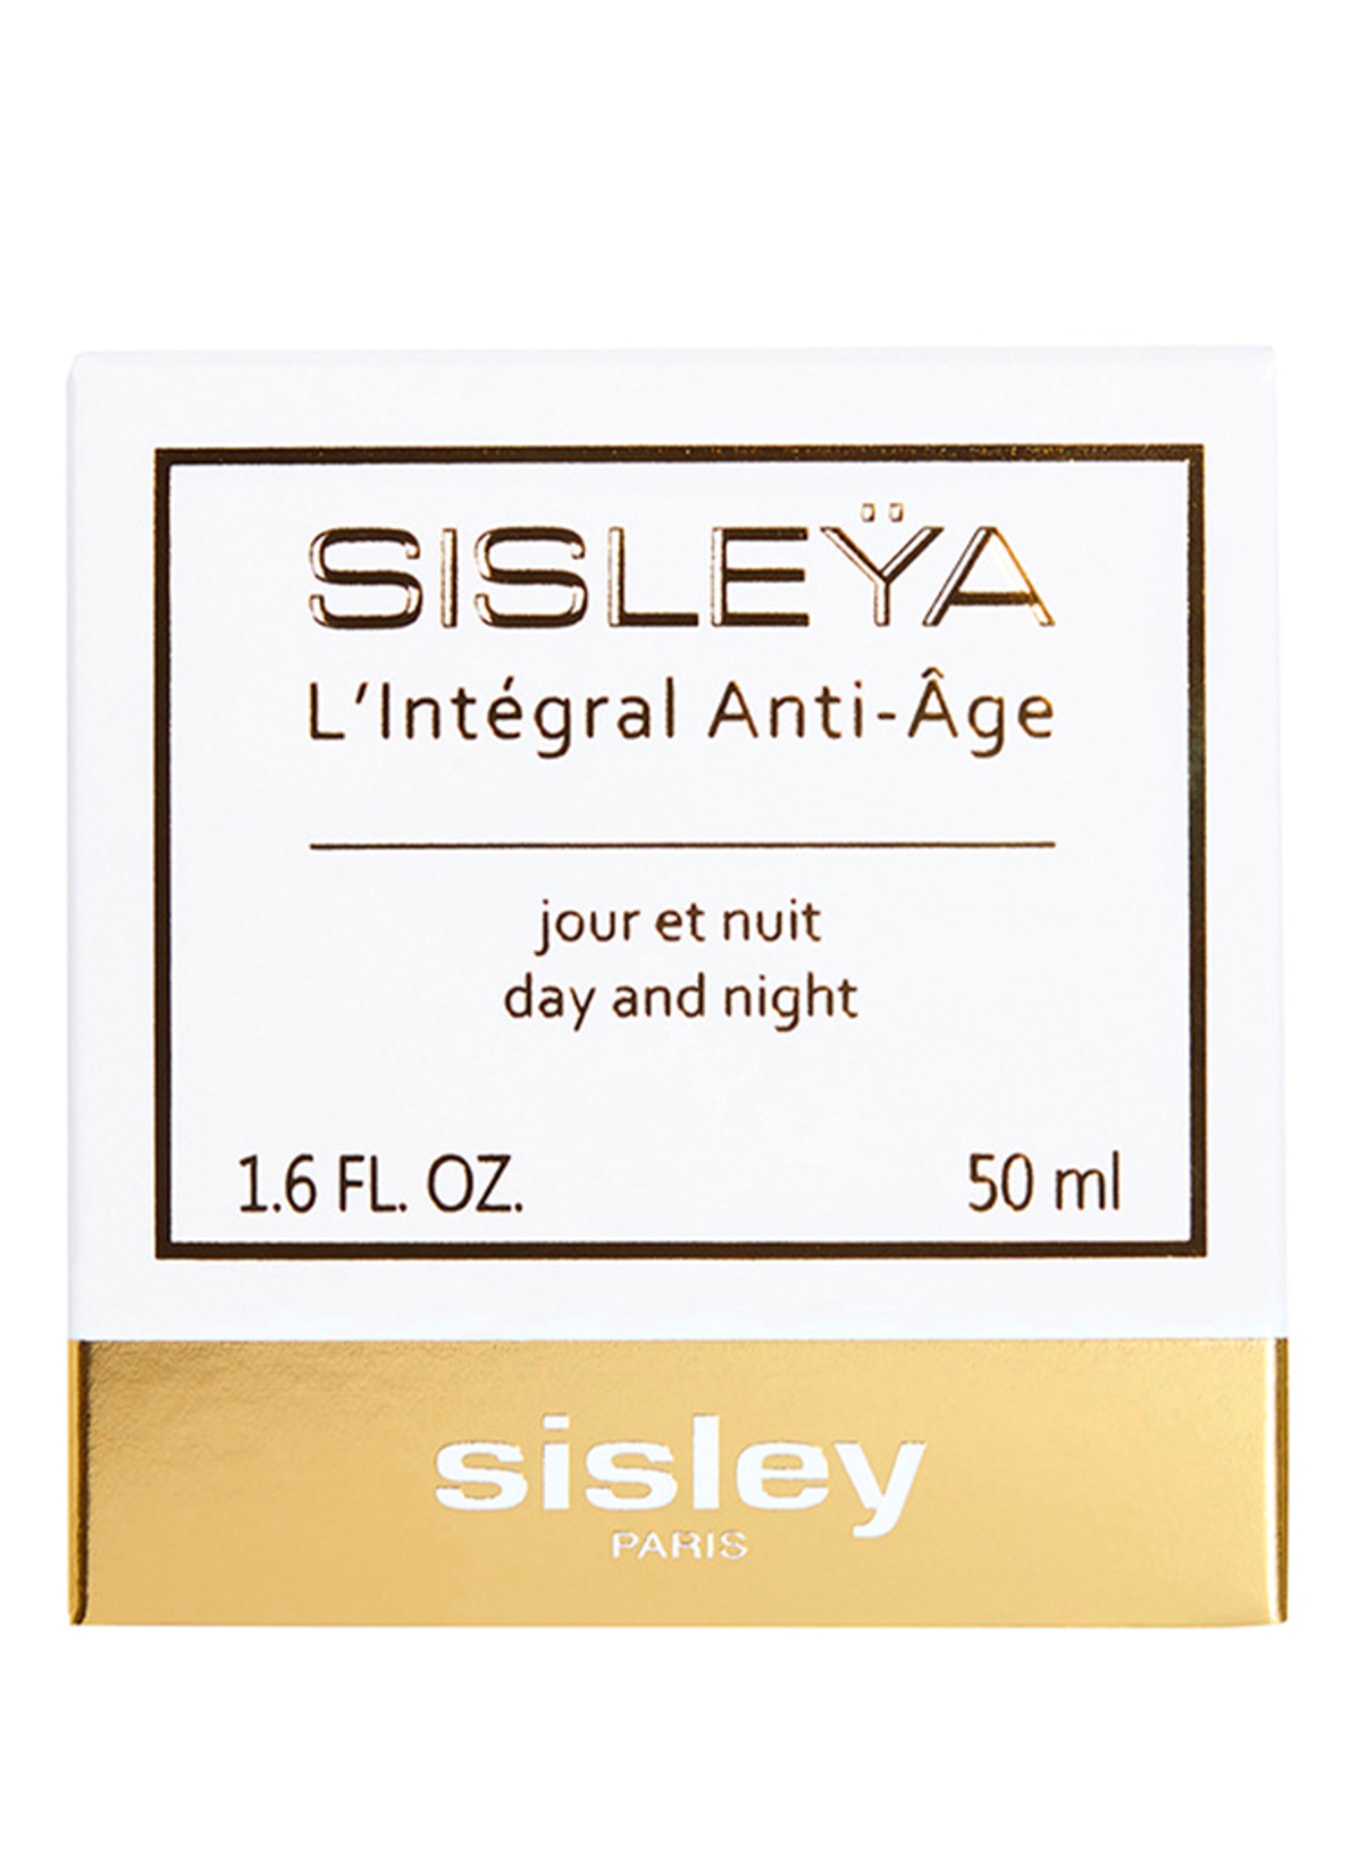 sisley Paris SISLEŸA L'INTÉGRAL ANTI-AGE (Obrázek 2)